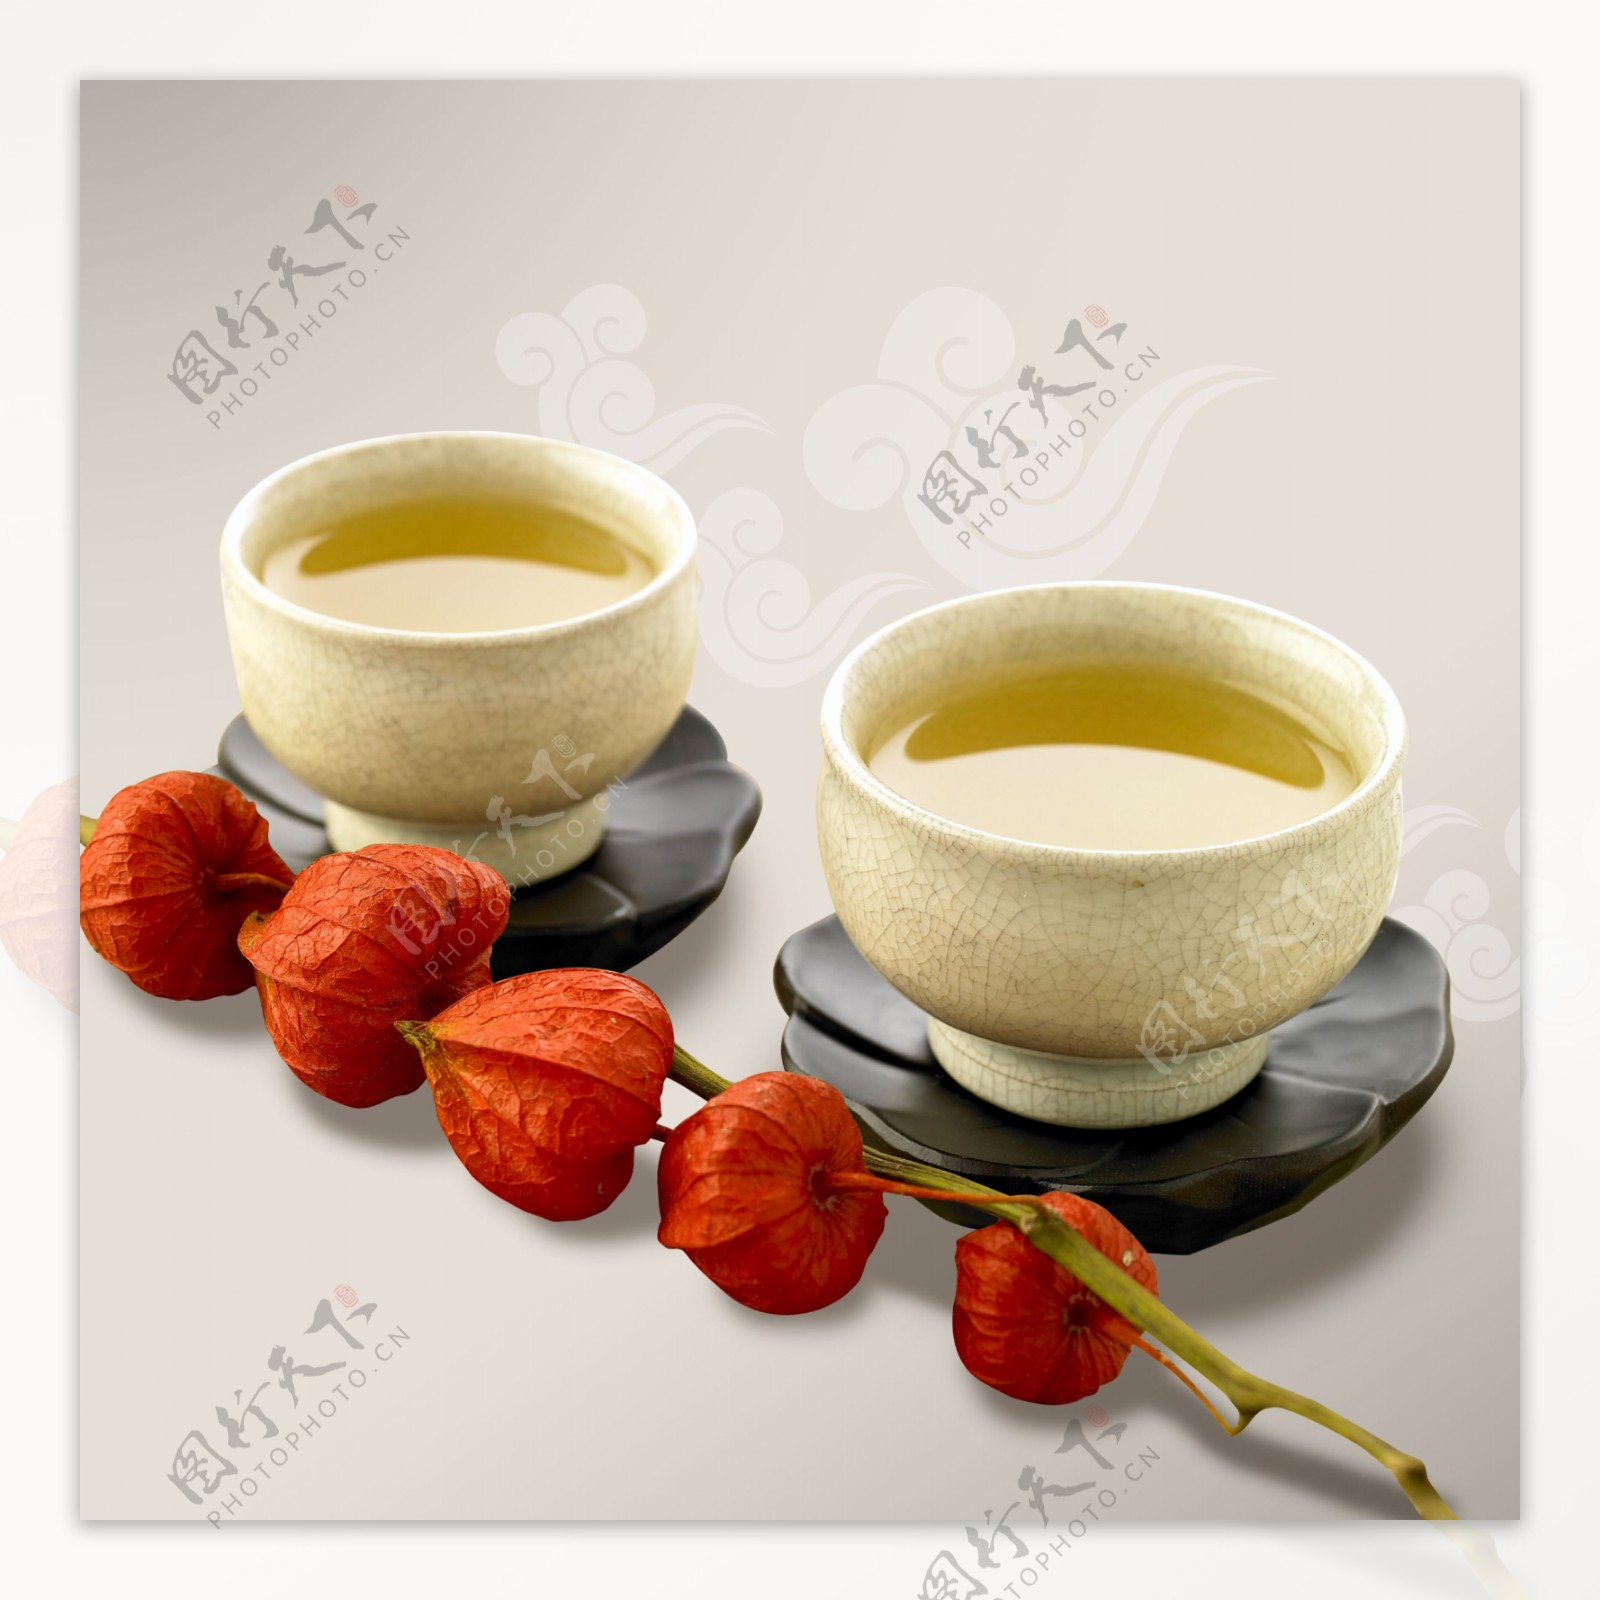 红枣茶杯创意无框画素材